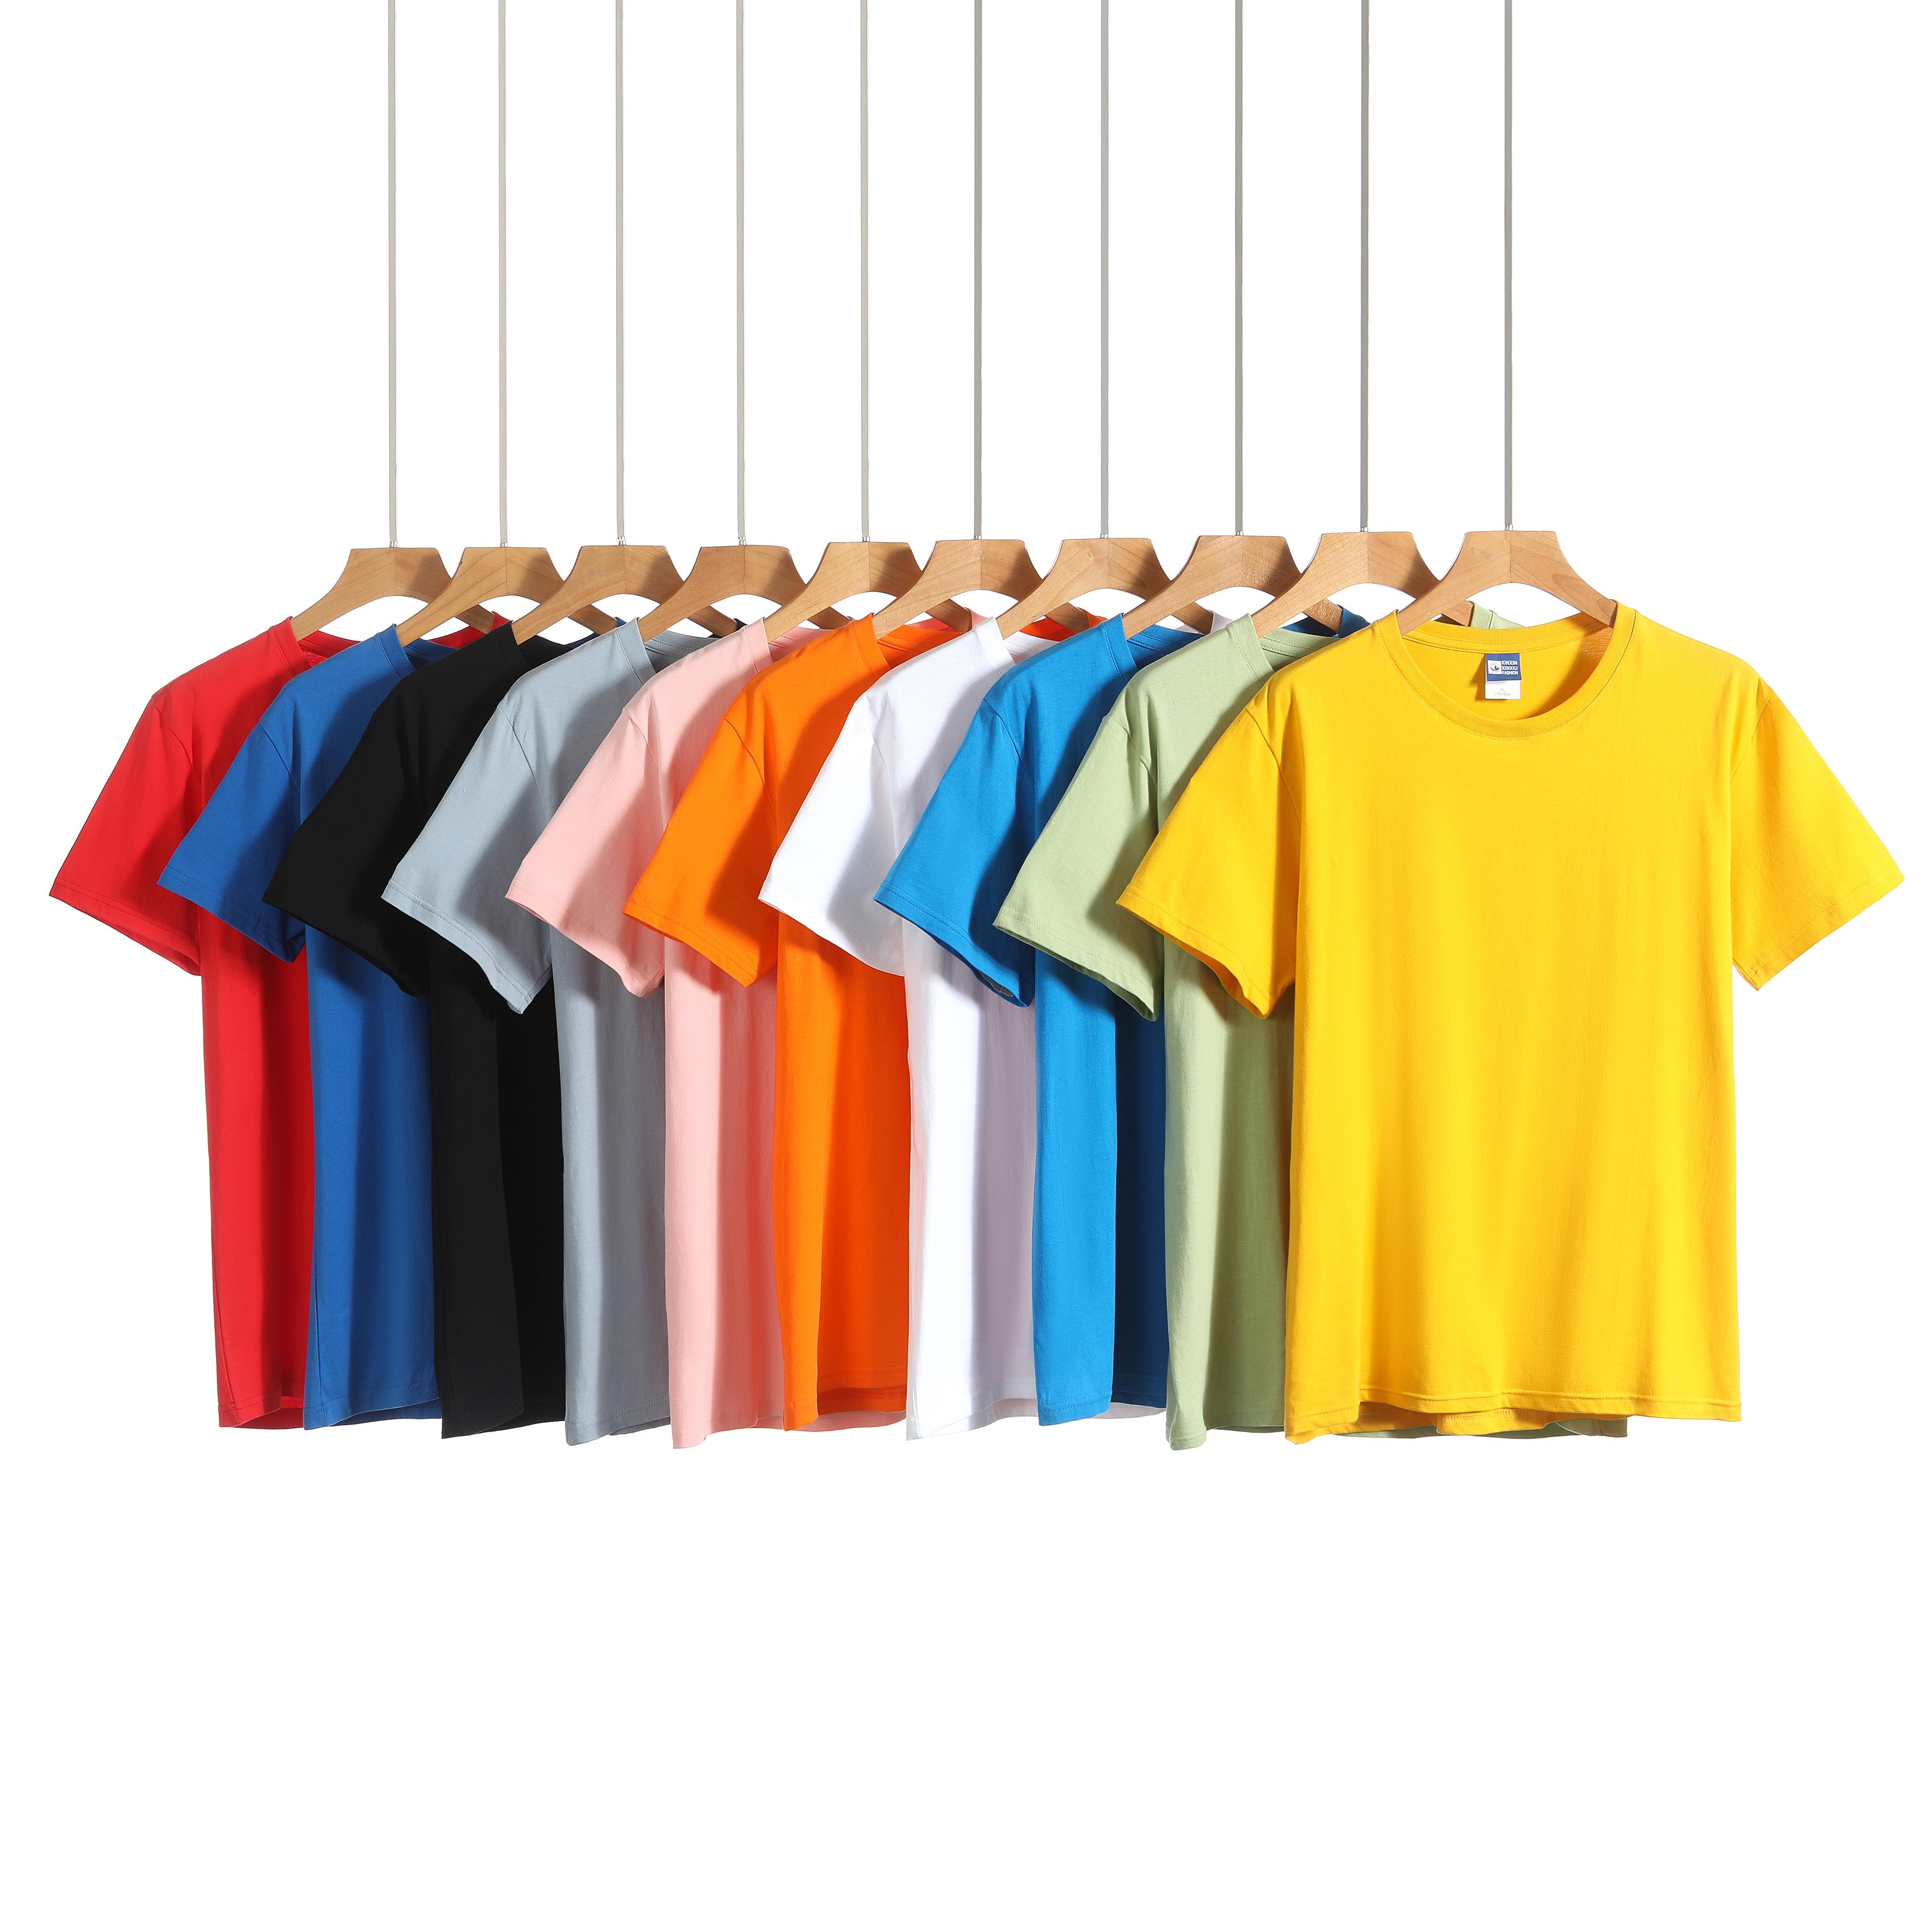 2021新品韩领POLO衫商务旅游团体服装定制批发厂家直销印制LOGO颜色款式丰富